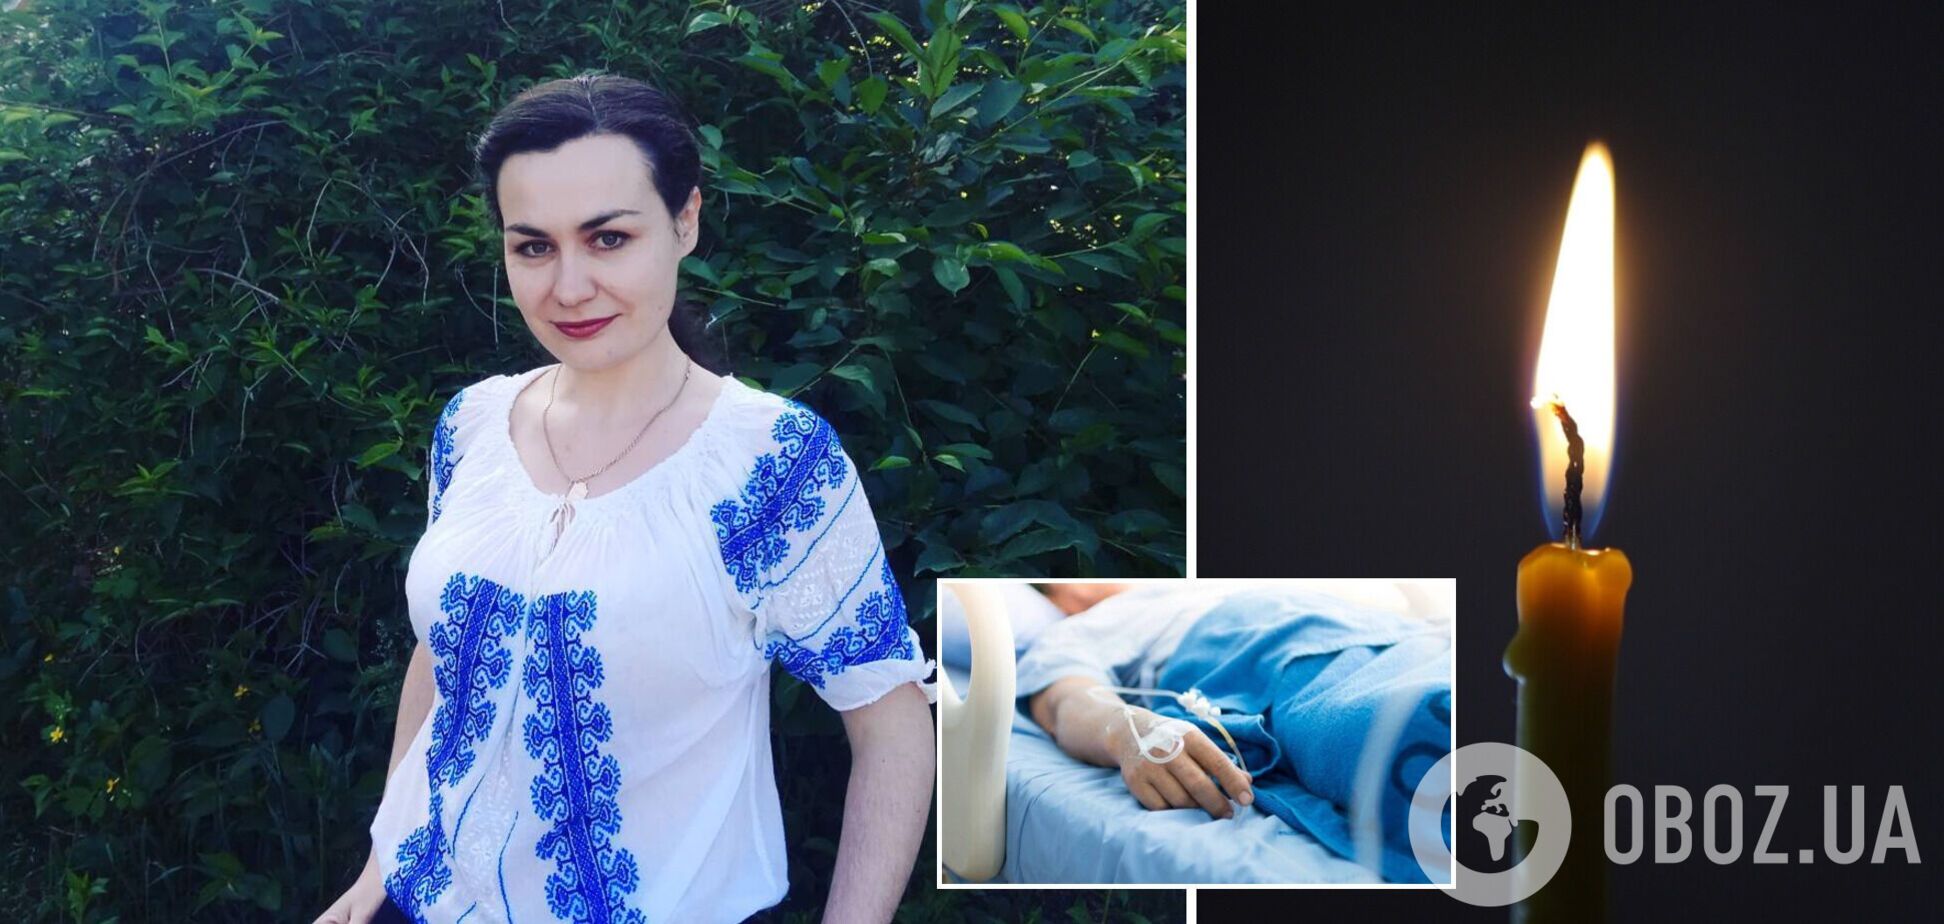 Отказалась лечь в больницу: в Киеве от COVID-19 умерла роженица, 11-дневный малыш остался без мамы. Фото